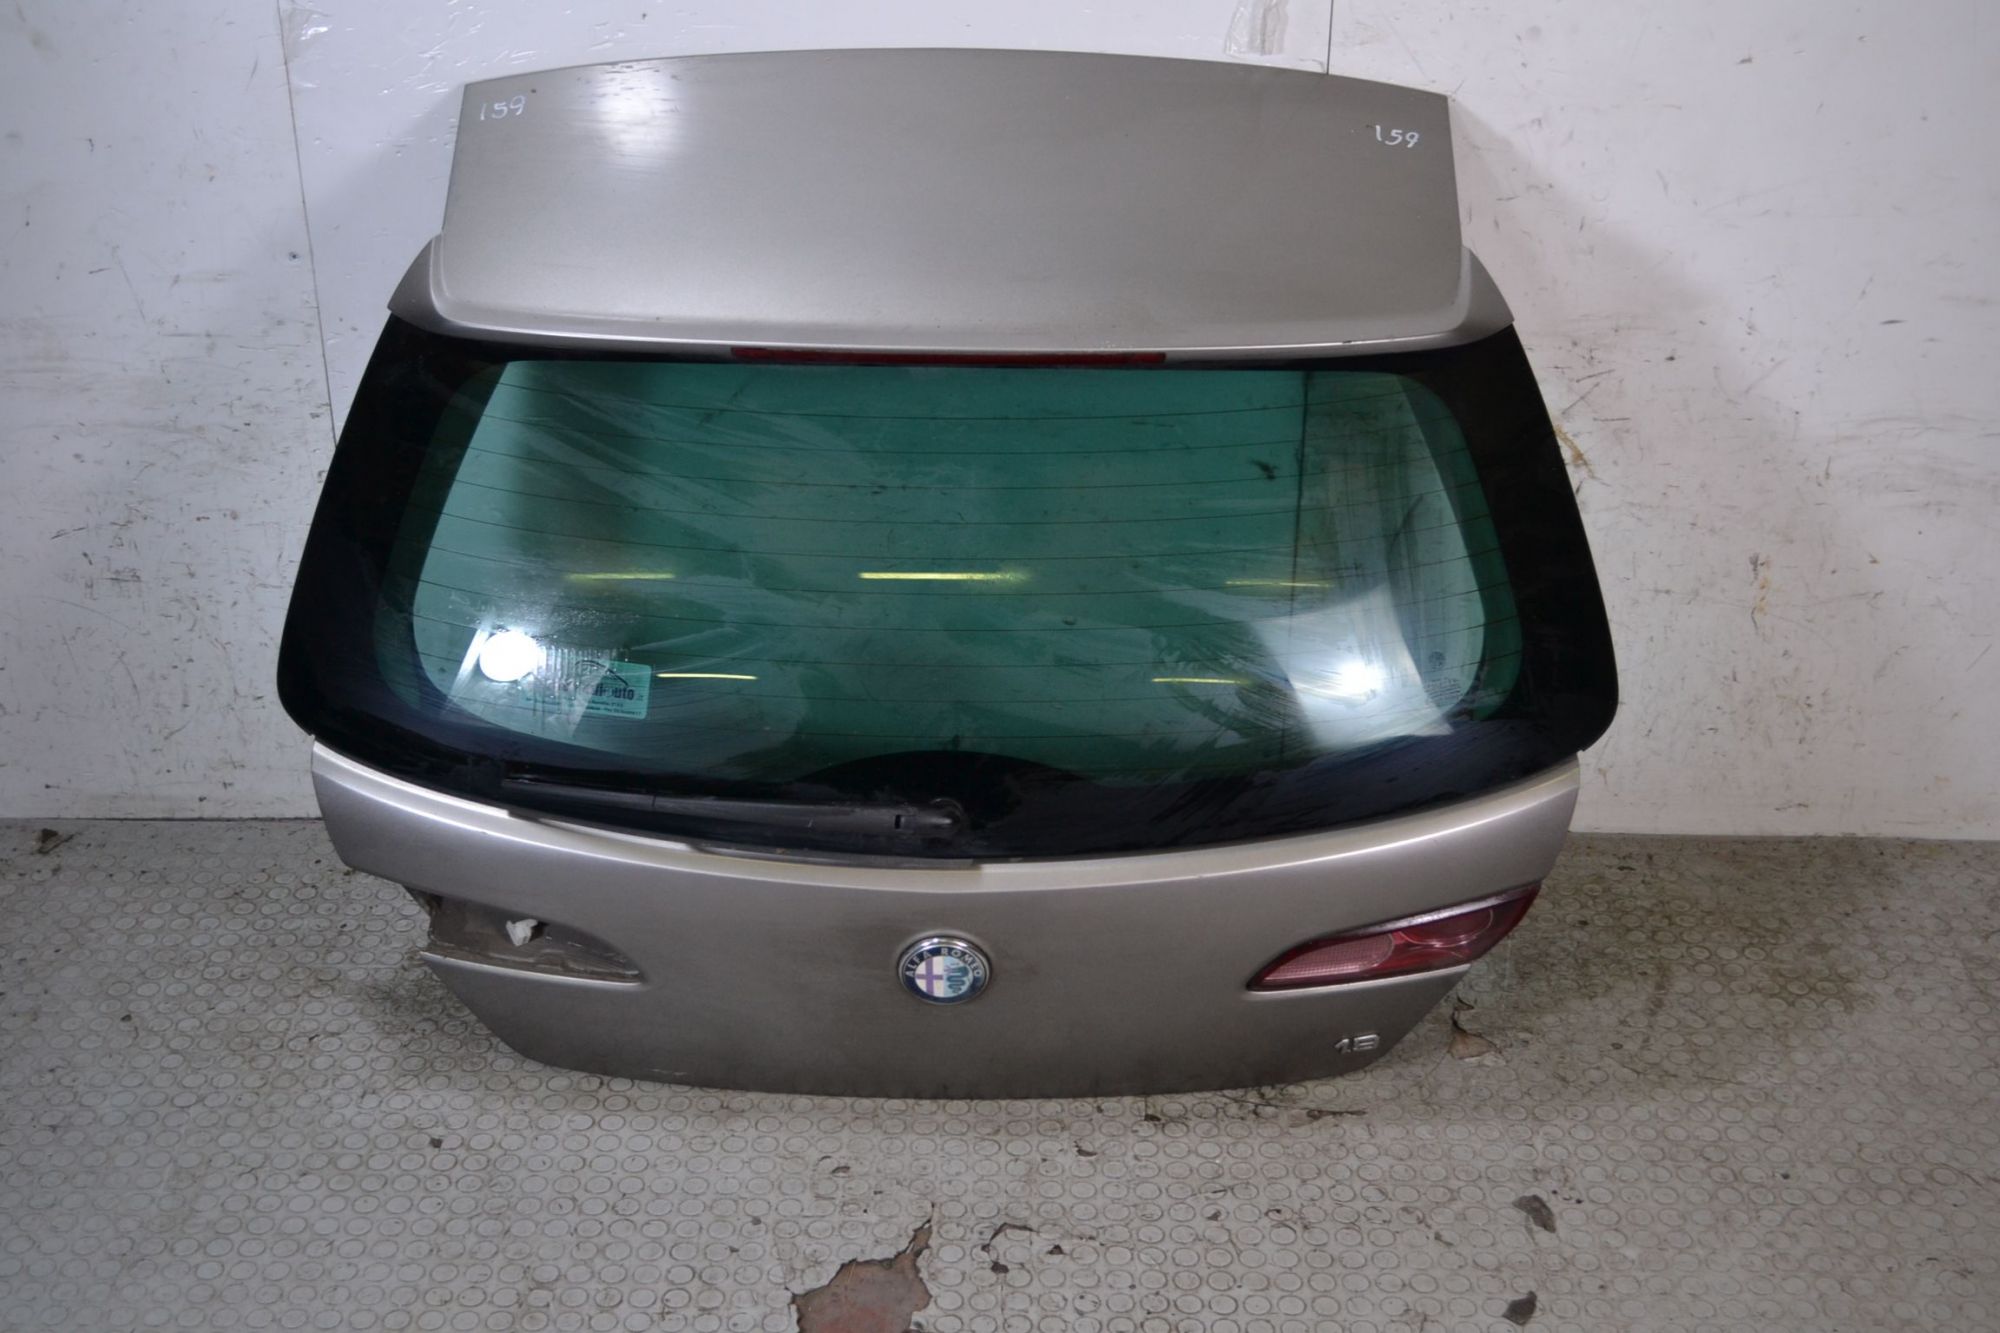 Portellone Bagagliaio Posteriore Alfa Romeo 159 SW dal 2005 al 2011 Cod 60692985  1698050883477